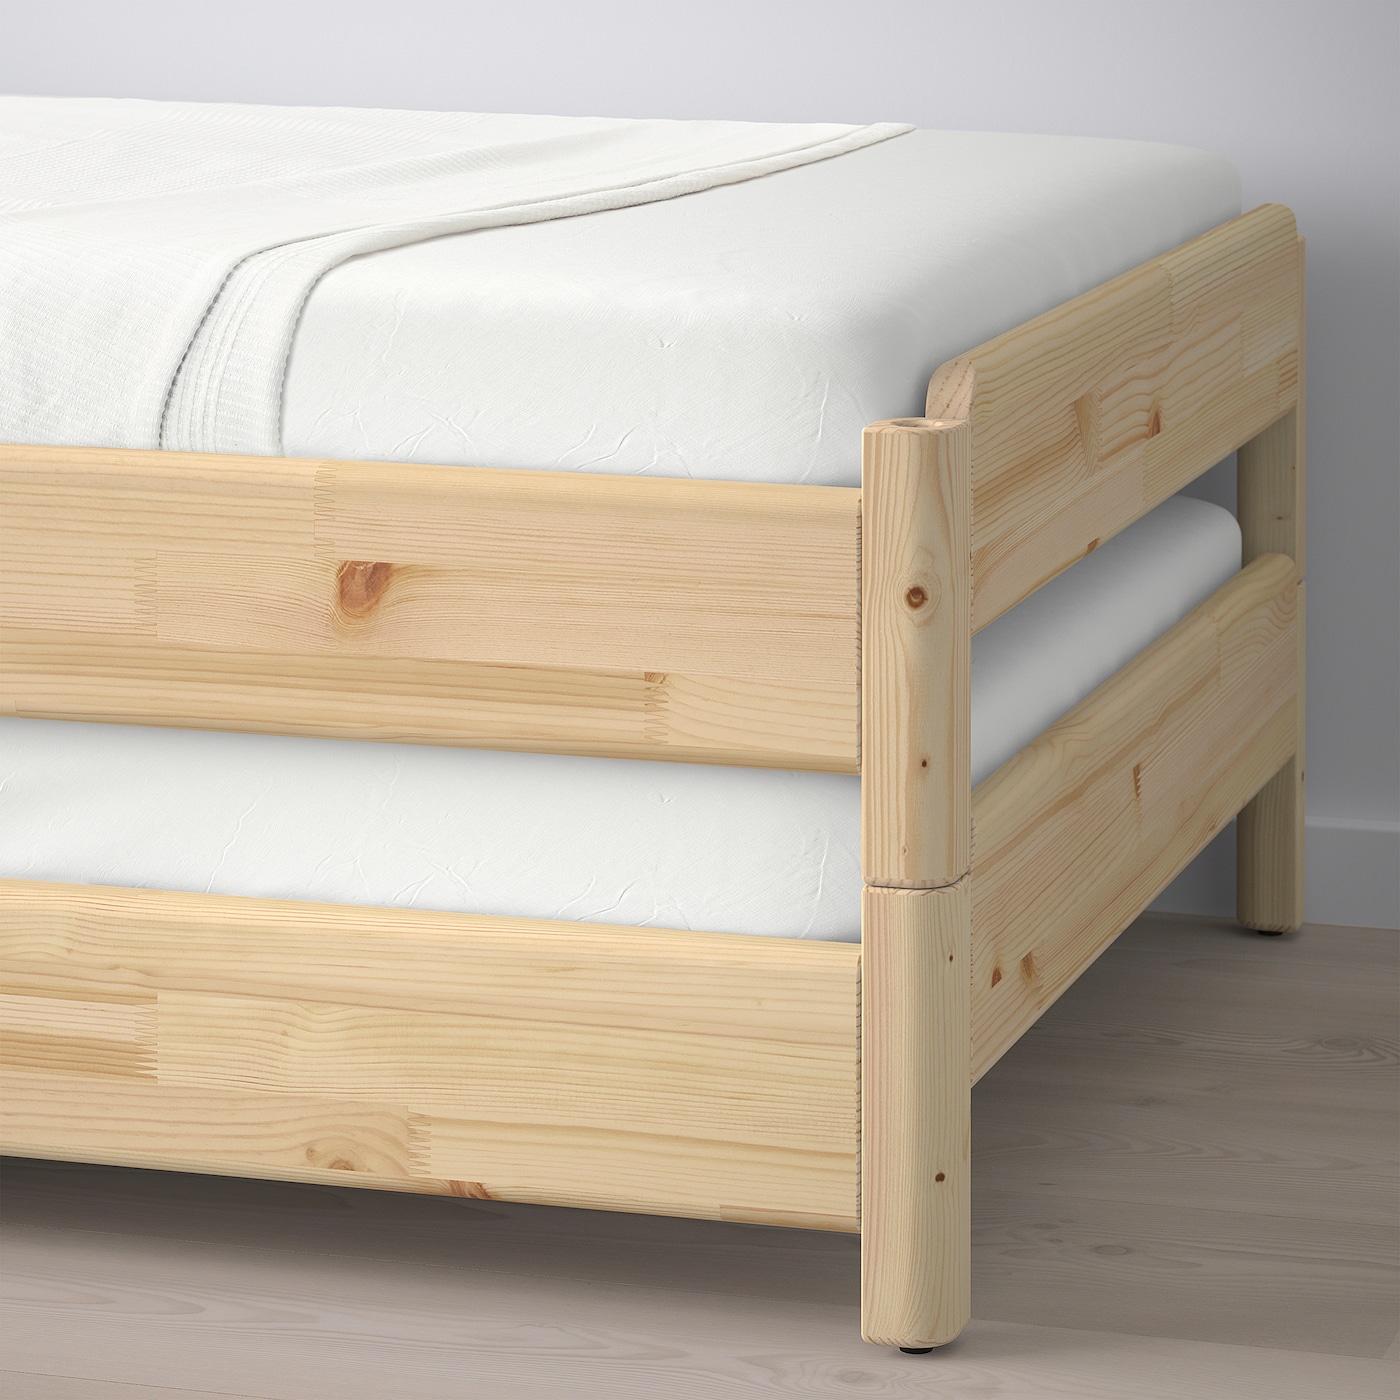 UTÅKER Штабельне ліжко з 2 матрацами - сосна / фірма Åsvang 80x200 см 8